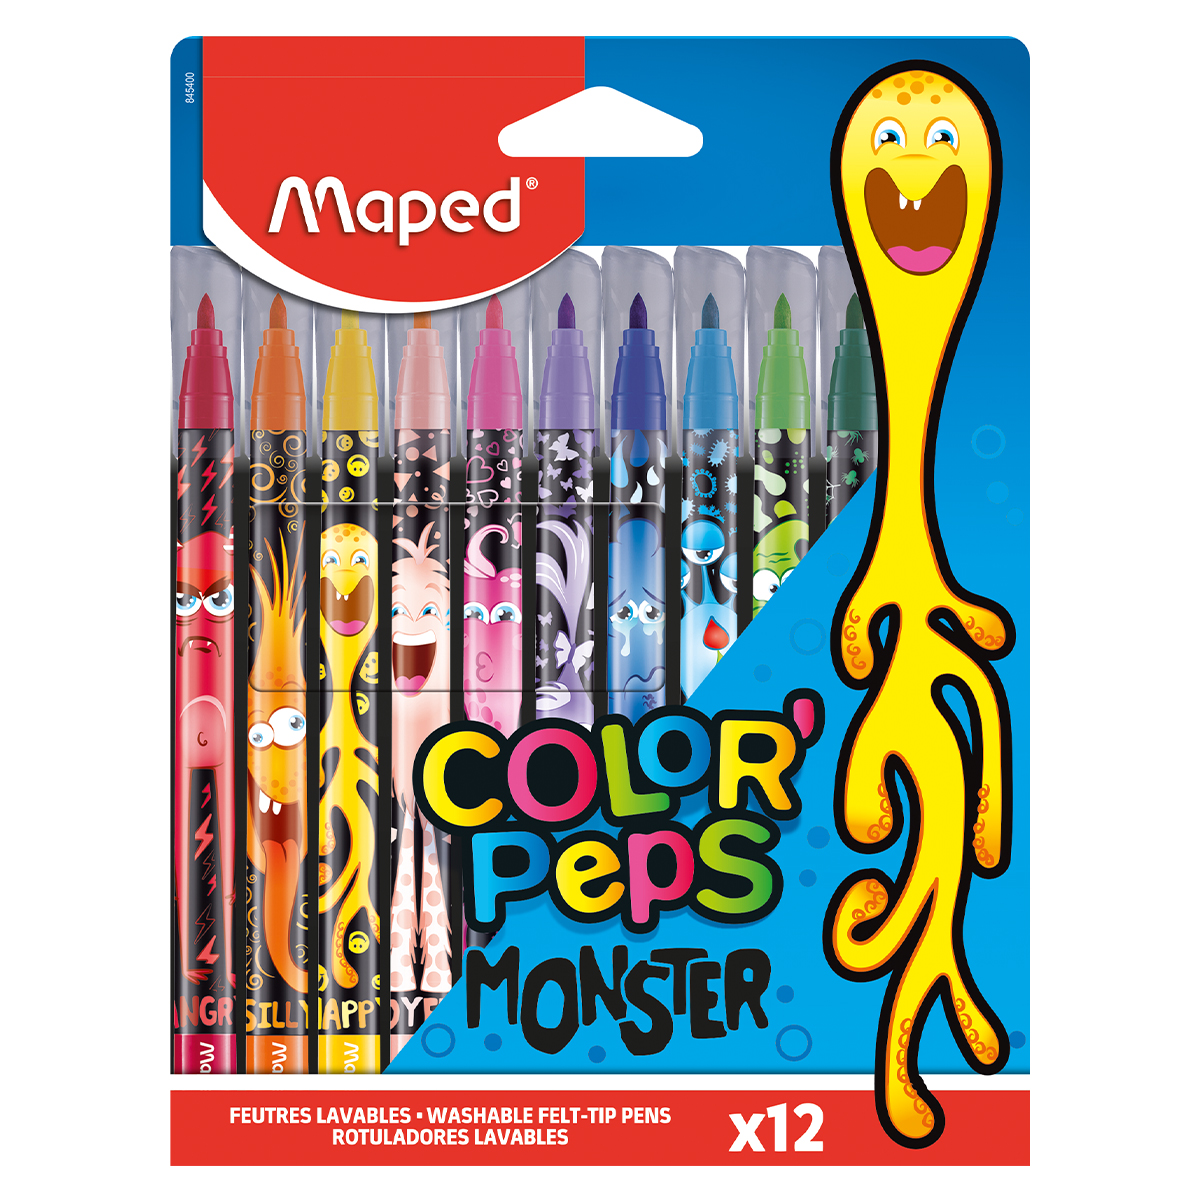 Maped Colorpeps Feutres Monster Lot de 12